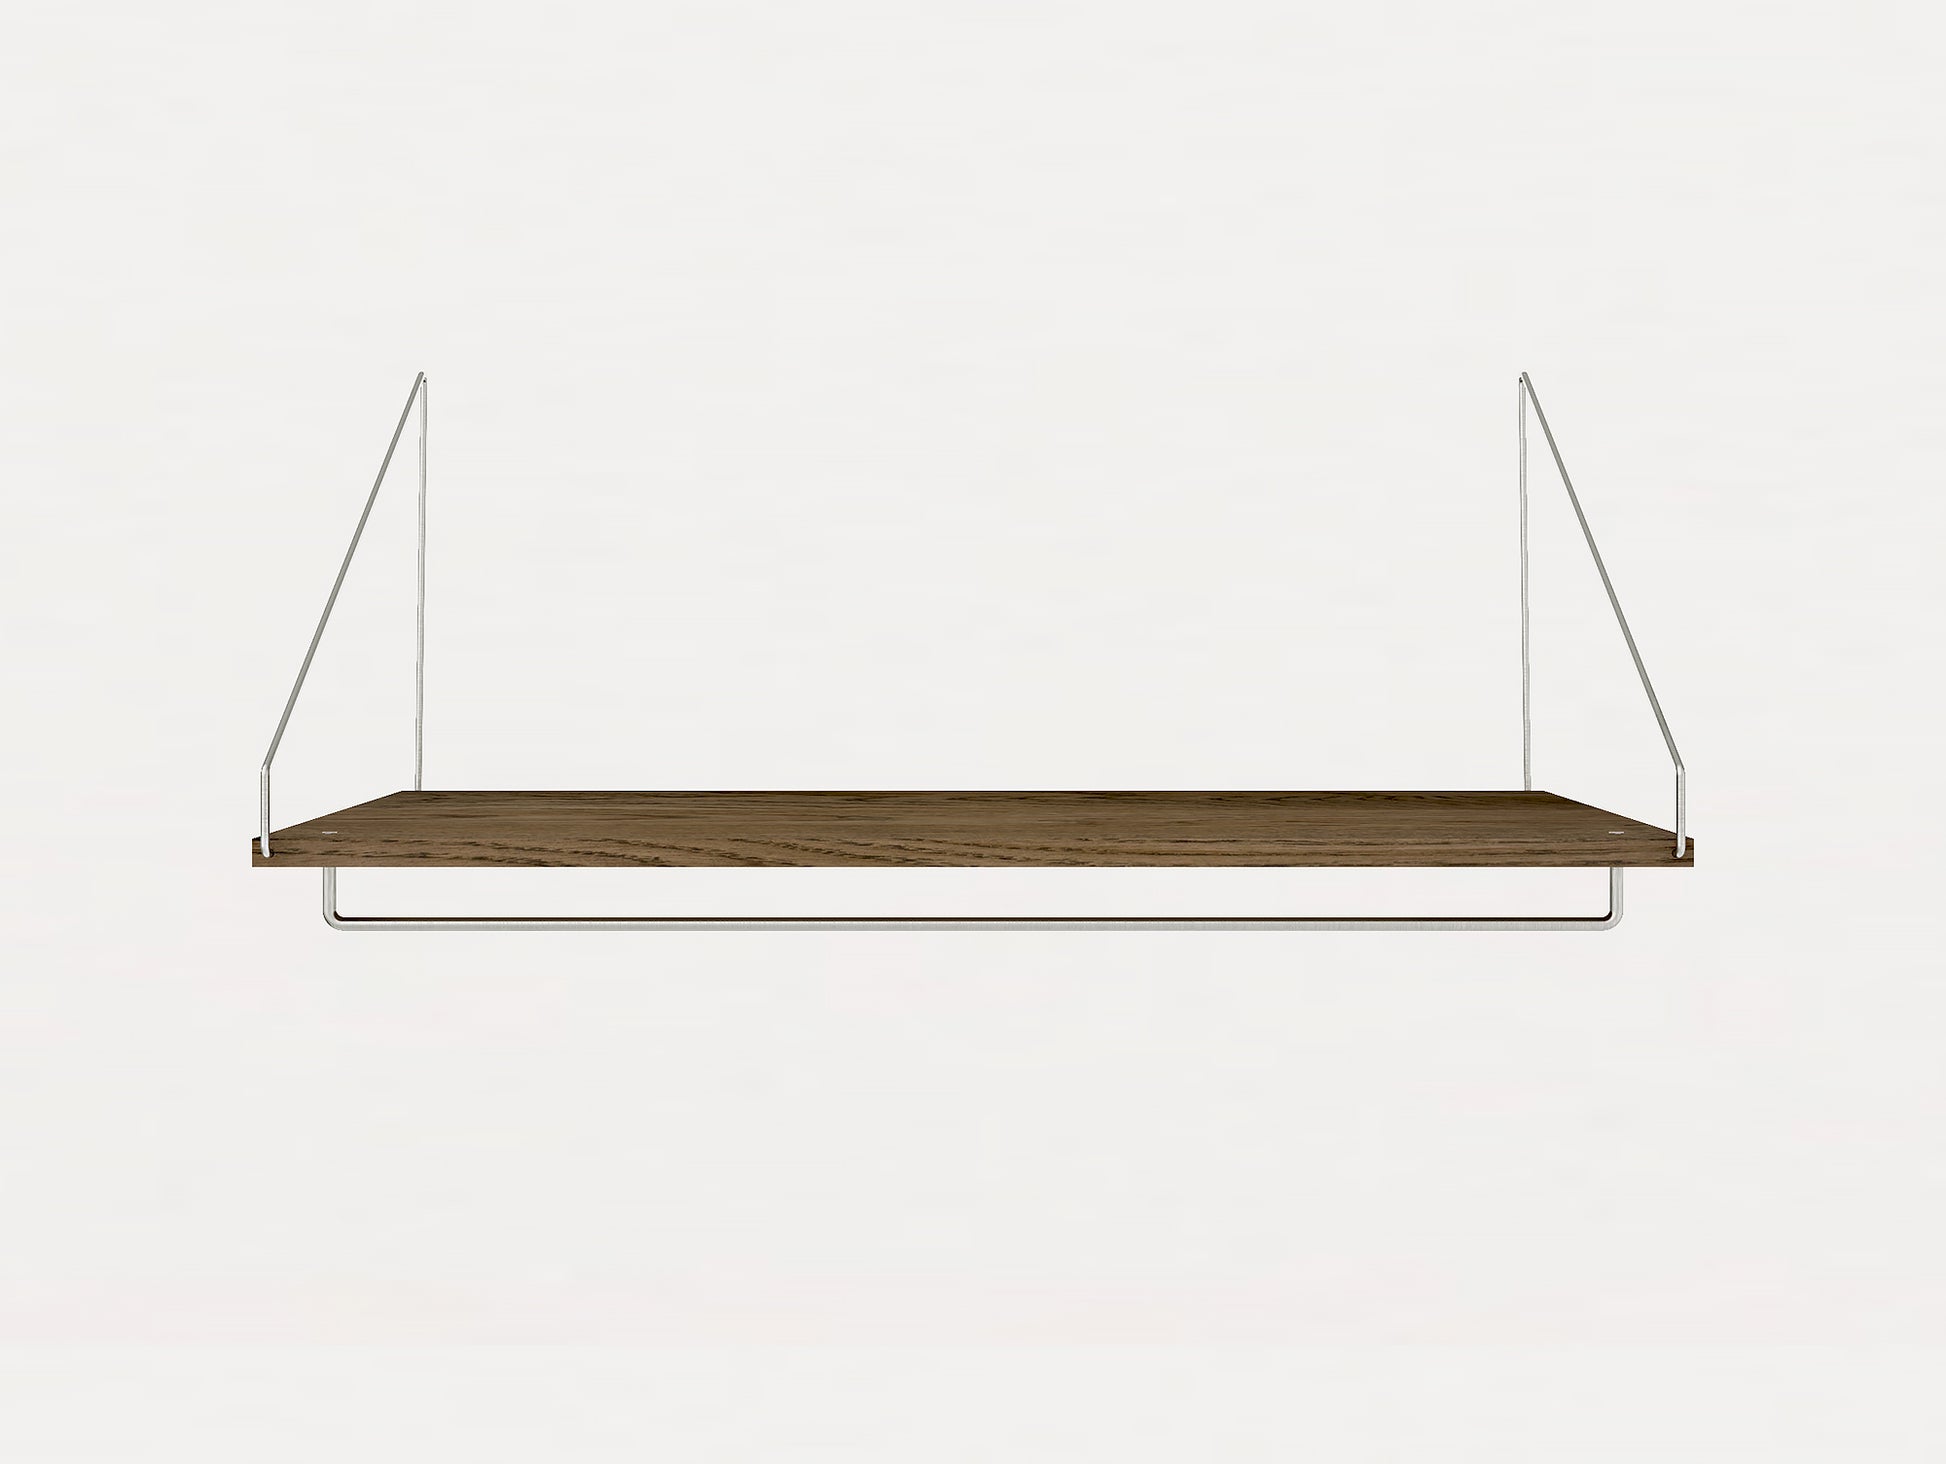 Depth: 40 cm Width: 80 cm Hanger Shelf in Dark Oiled Oak by Frama